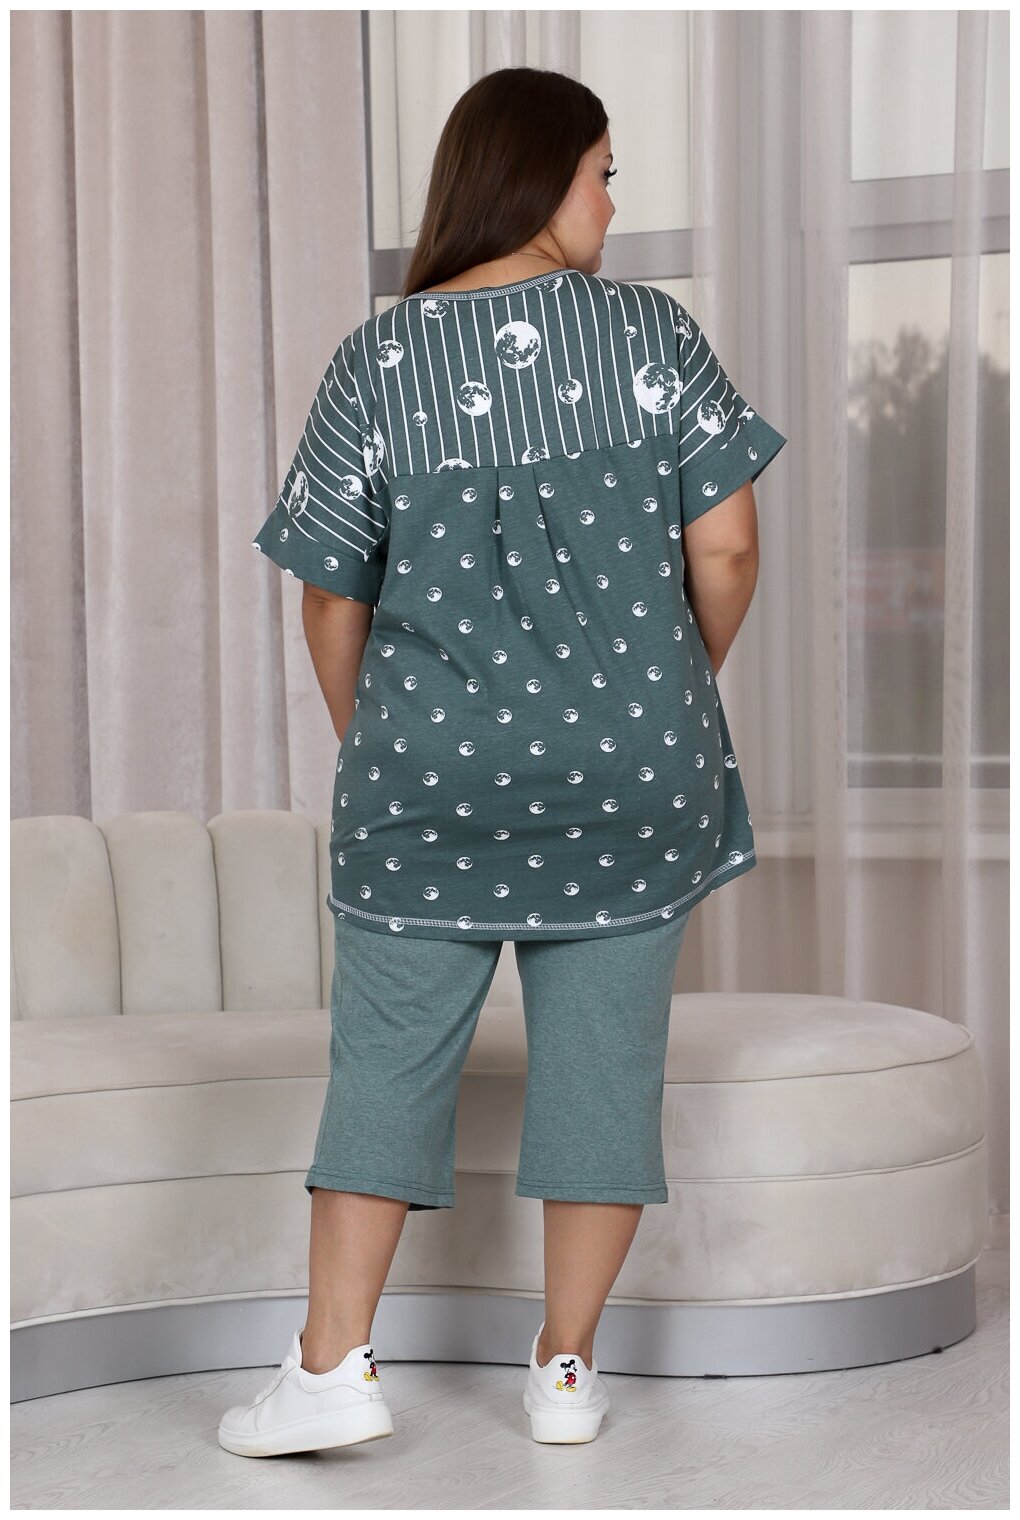 Комплект Натали, бриджи, футболка, капри, короткий рукав, пояс на резинке, карманы, трикотажная, размер 54, зеленый - фотография № 2